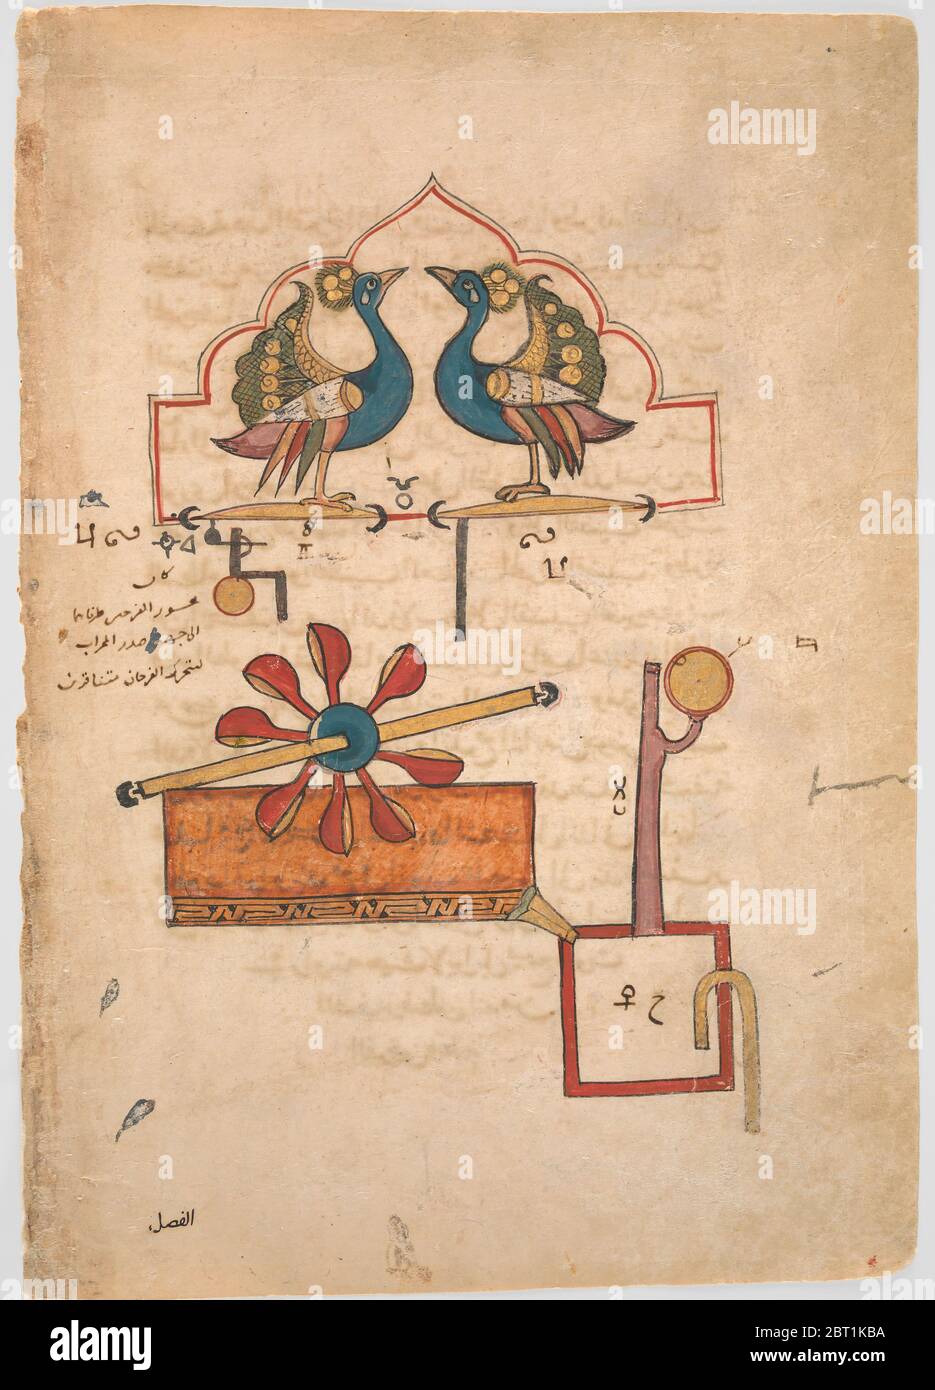 Disegno per l'orologio dell'acqua dei pavoni, dal Kitab fi ma'rifat al-hiyal-handasiyya (Libro della conoscenza dei dispositivi meccanici ingegnosi) di Badi' al-Zaman b. al Razzaz al-Jazari, datato A.H. 715/A.D. 1315. Foto Stock